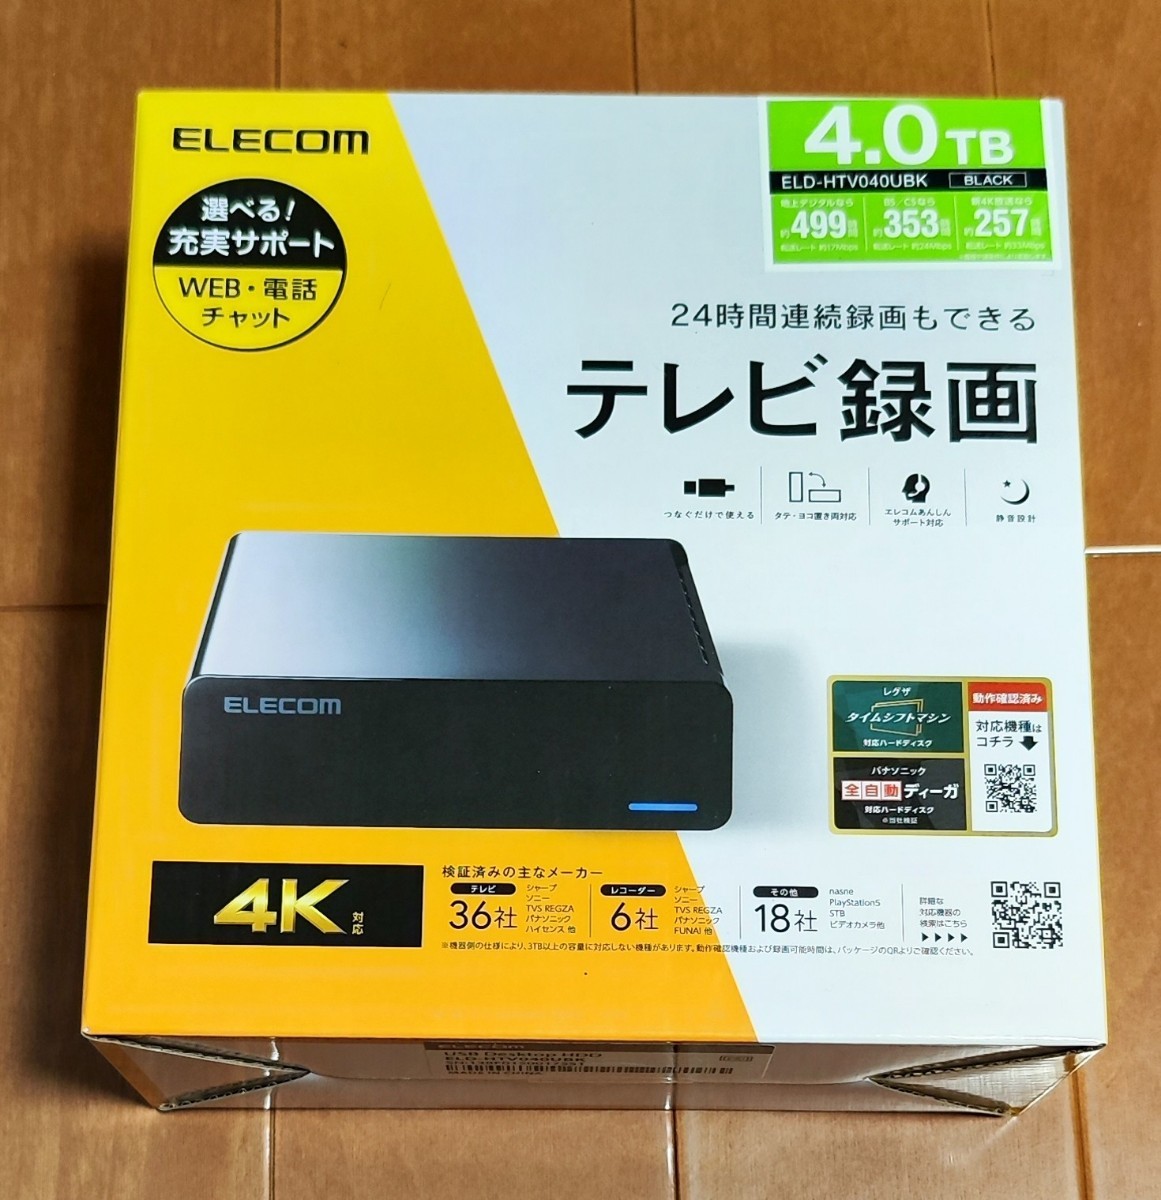 新品未開封品 4TB 外付けハードディスク ELECOM エレコム 静音 防振 4K録画対応の画像1